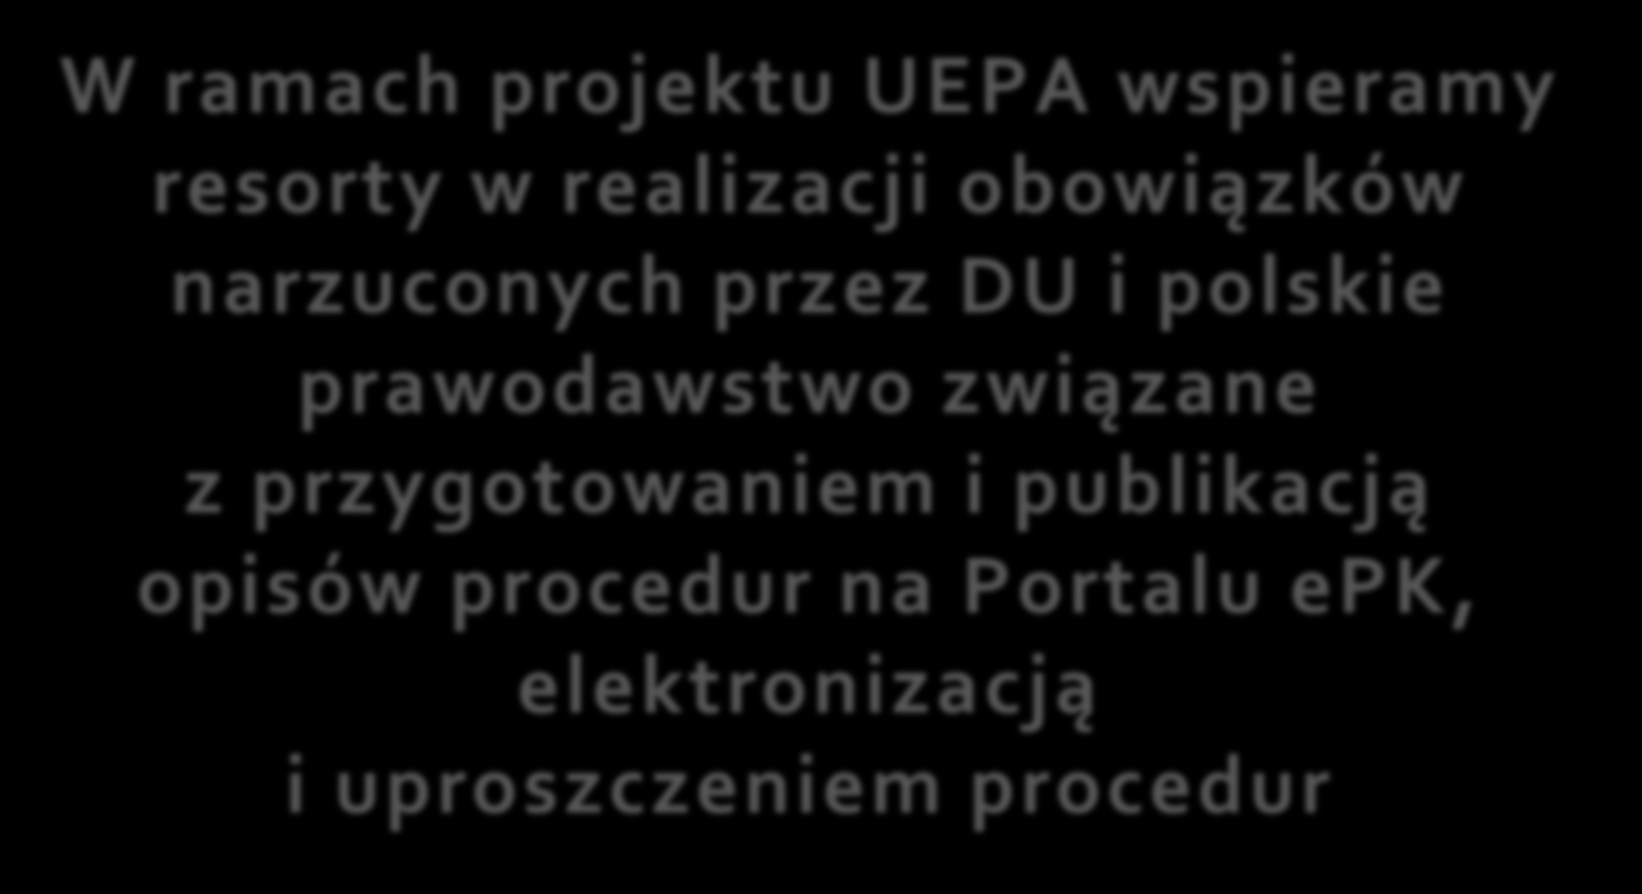 UEPA W ramach projektu UEPA wspieramy resorty w realizacji obowiązków narzuconych przez DU i polskie